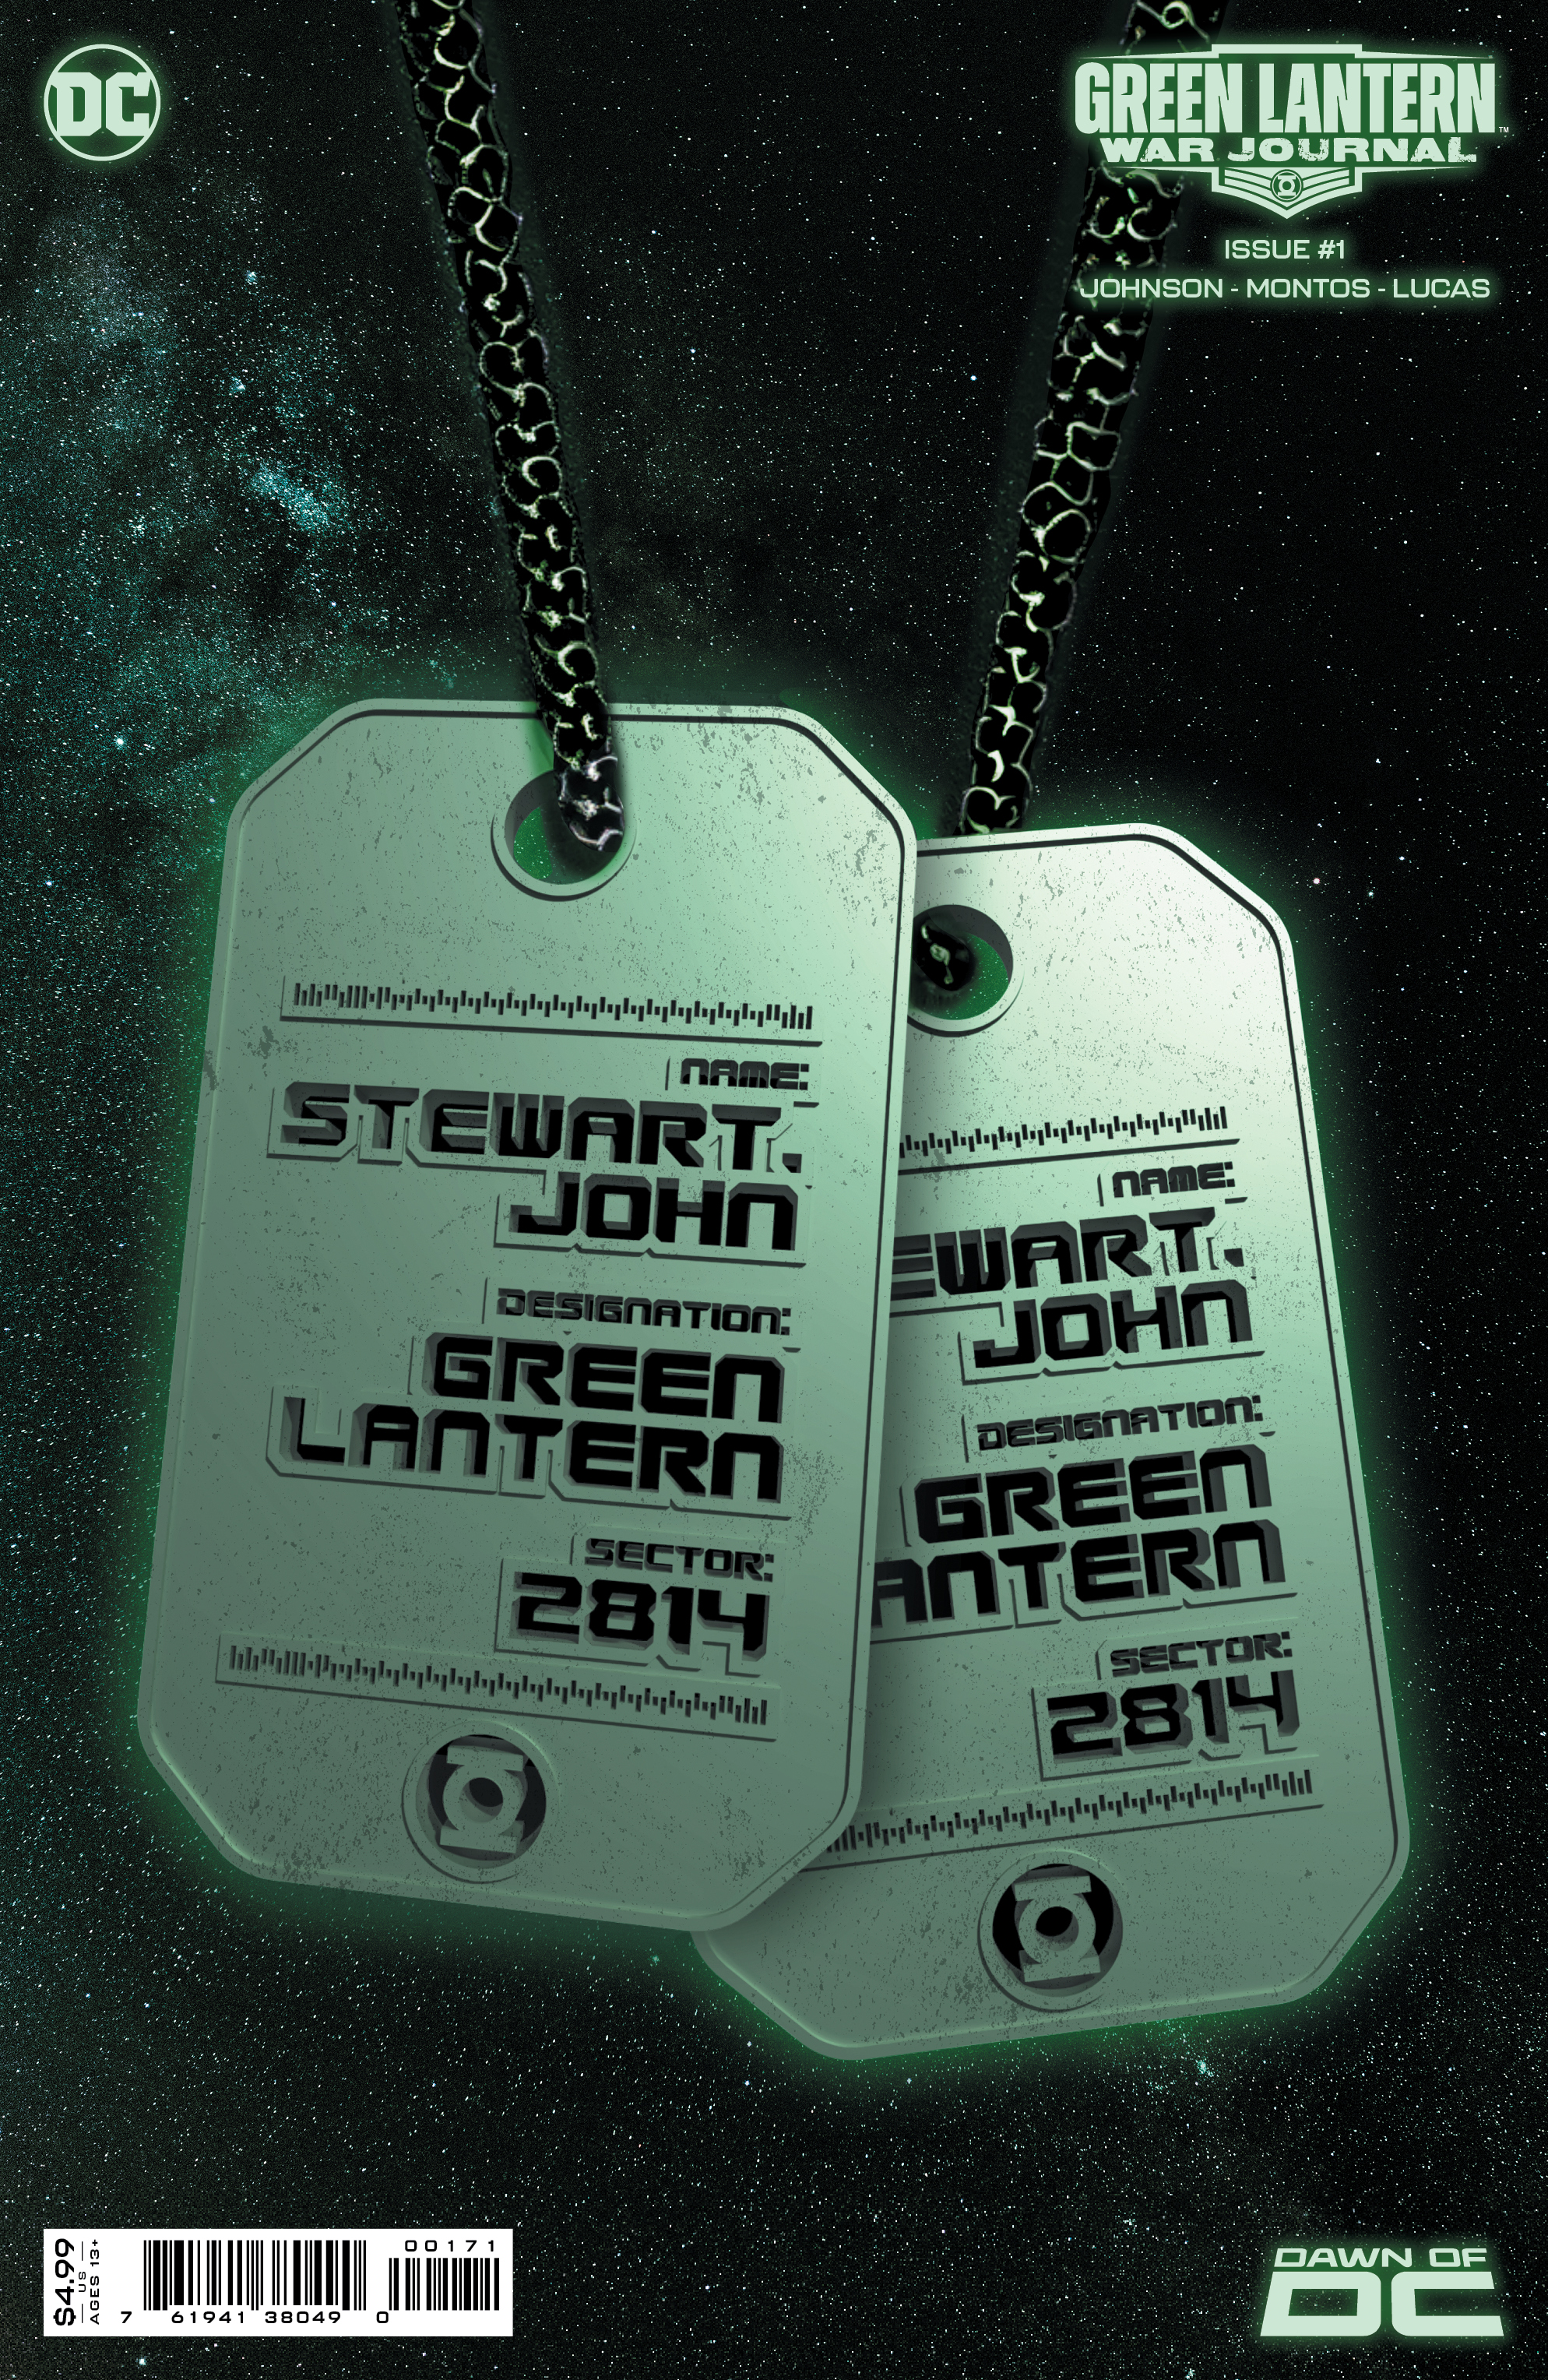 Couverture qui brille dans le noir pour Green Lantern: War Journal #1.